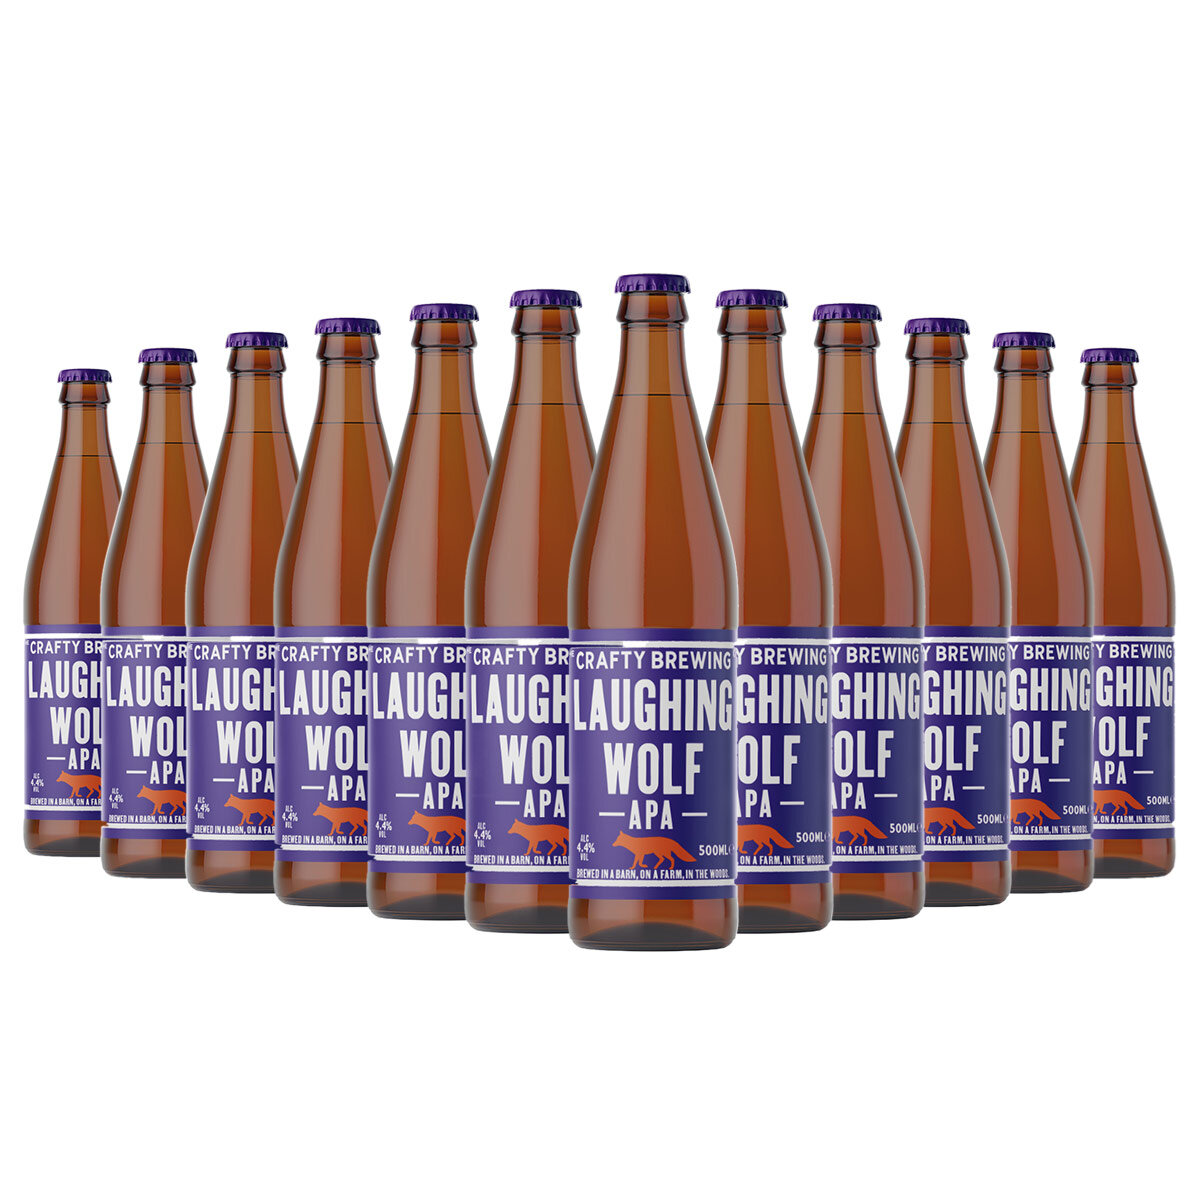 12 x 500ml bottles of Laughing Wolf APA